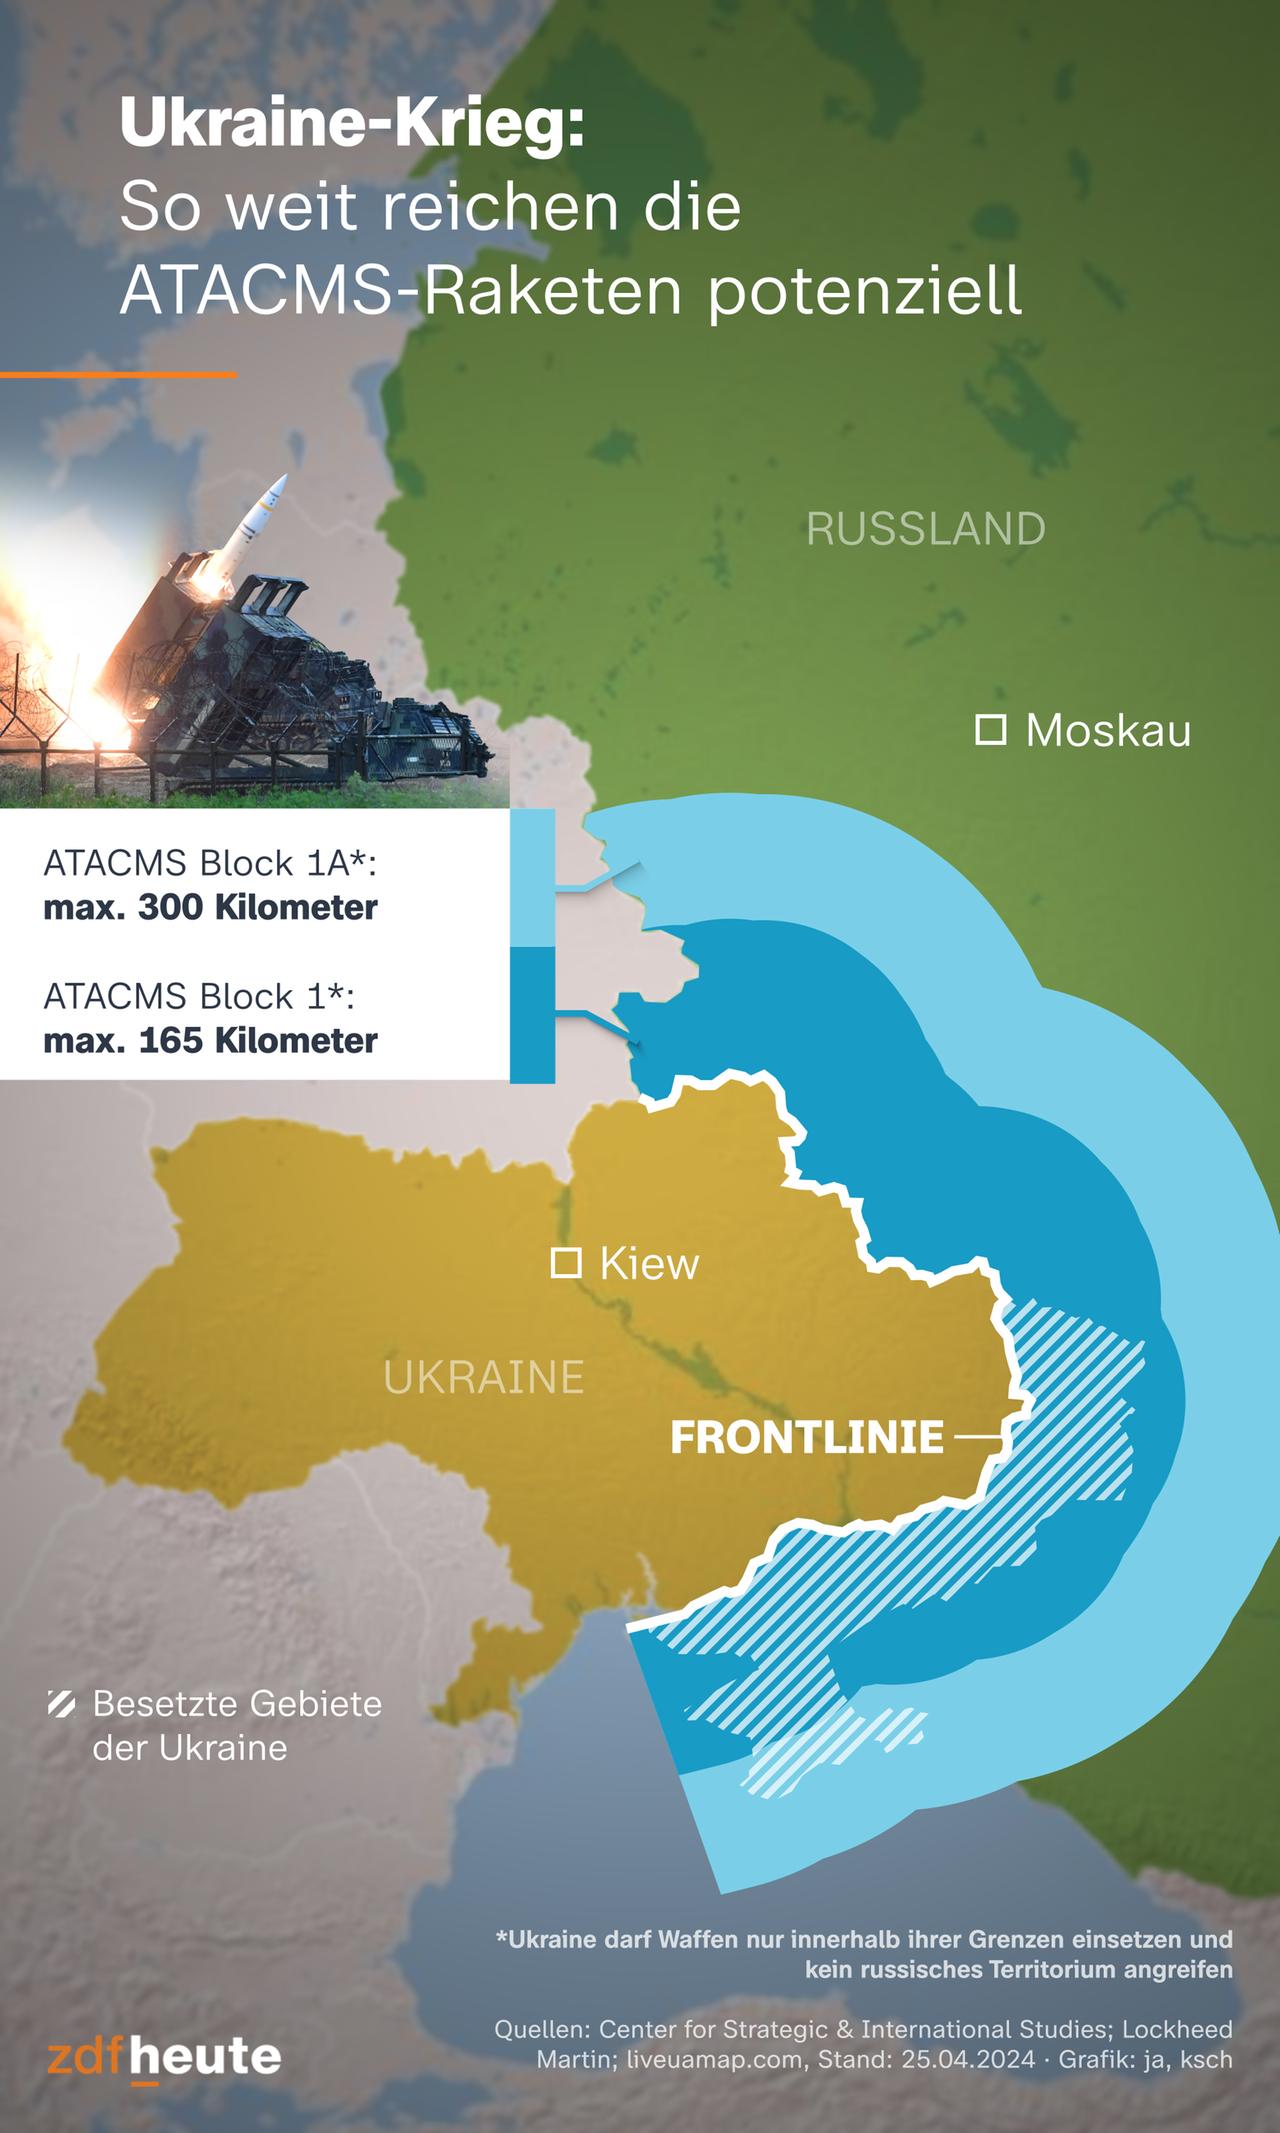 Estados Unidos suministra a Ucrania misiles ATACMS con un alcance de hasta 300 kilómetros.  El mapa muestra que Ucrania puede utilizarlo para atacar todo su territorio ocupado por Rusia.